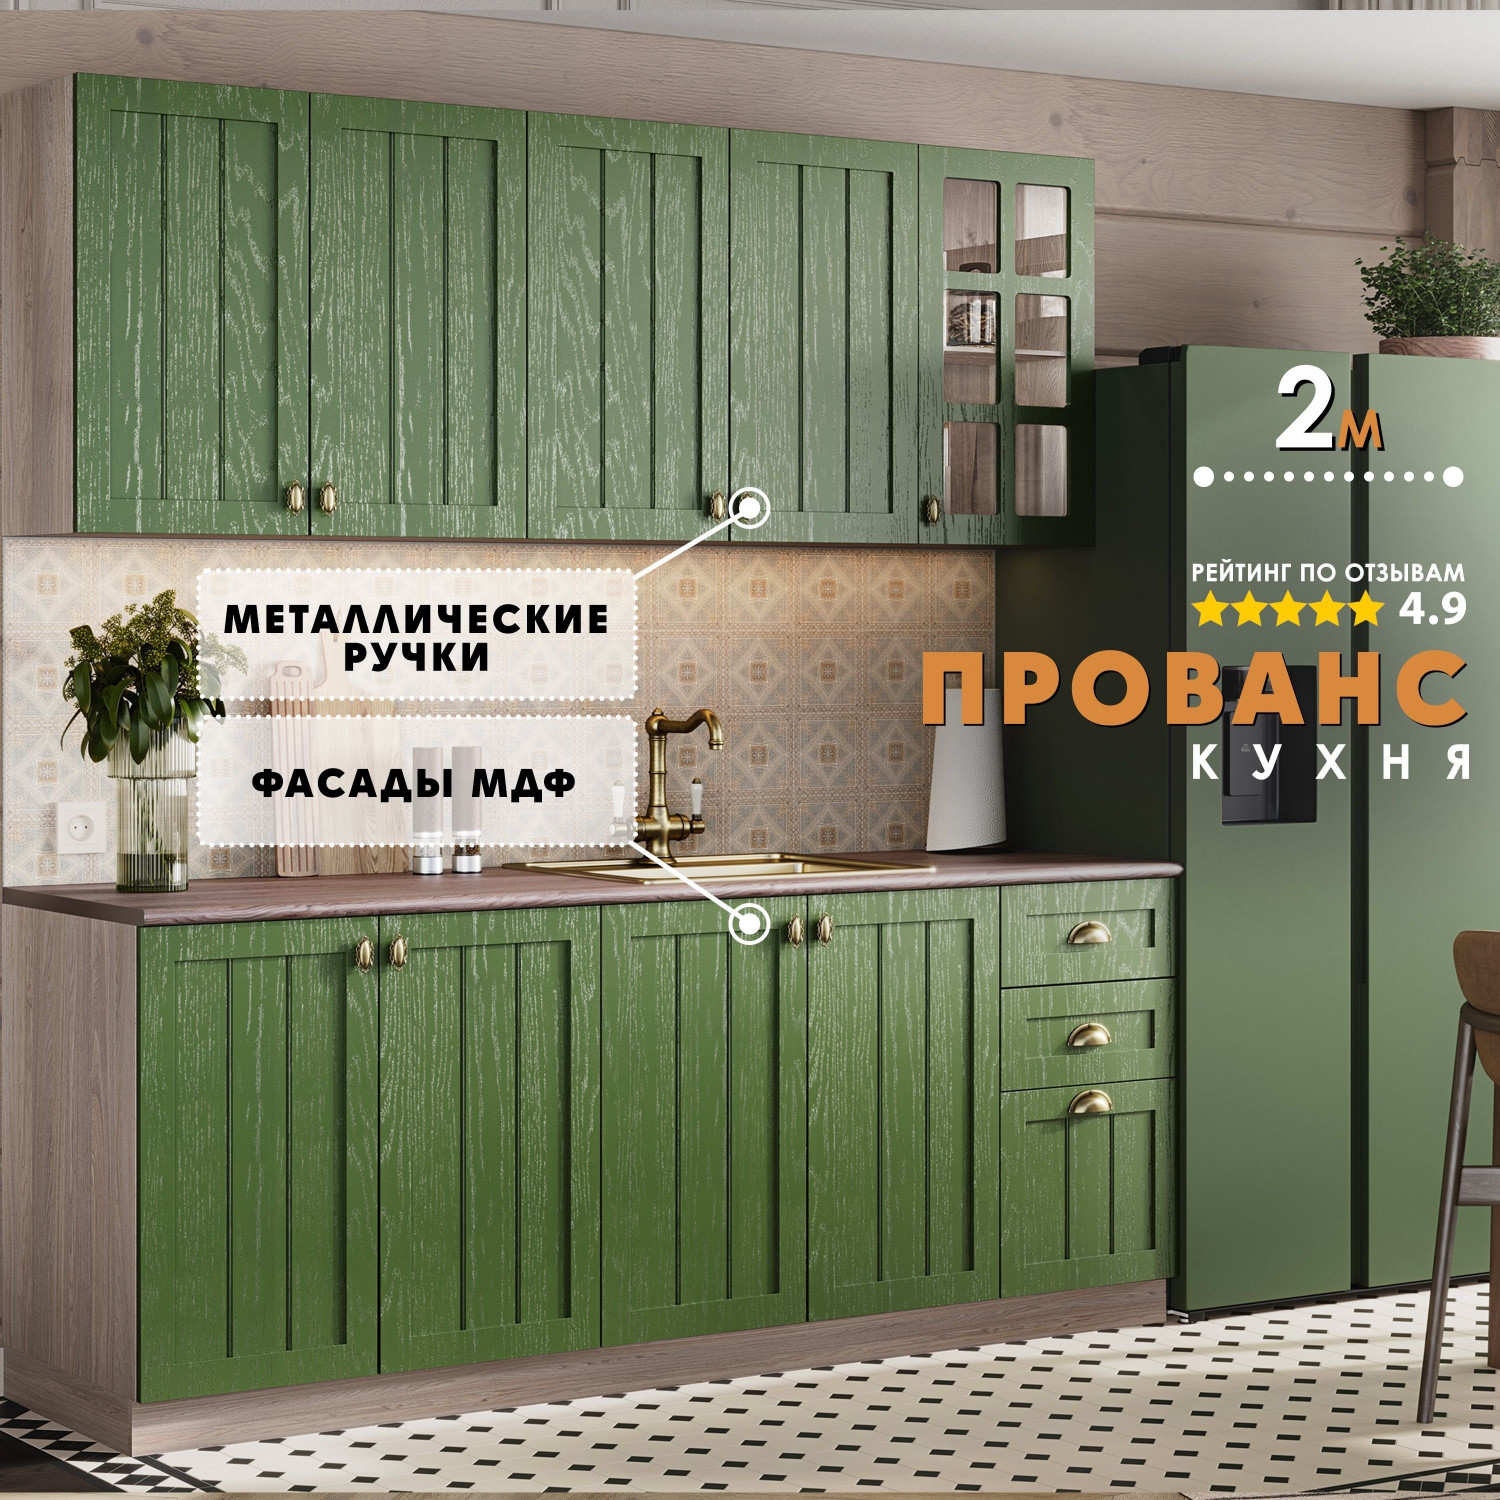 Кухня Прованс - 2 метра - Дип зеленый